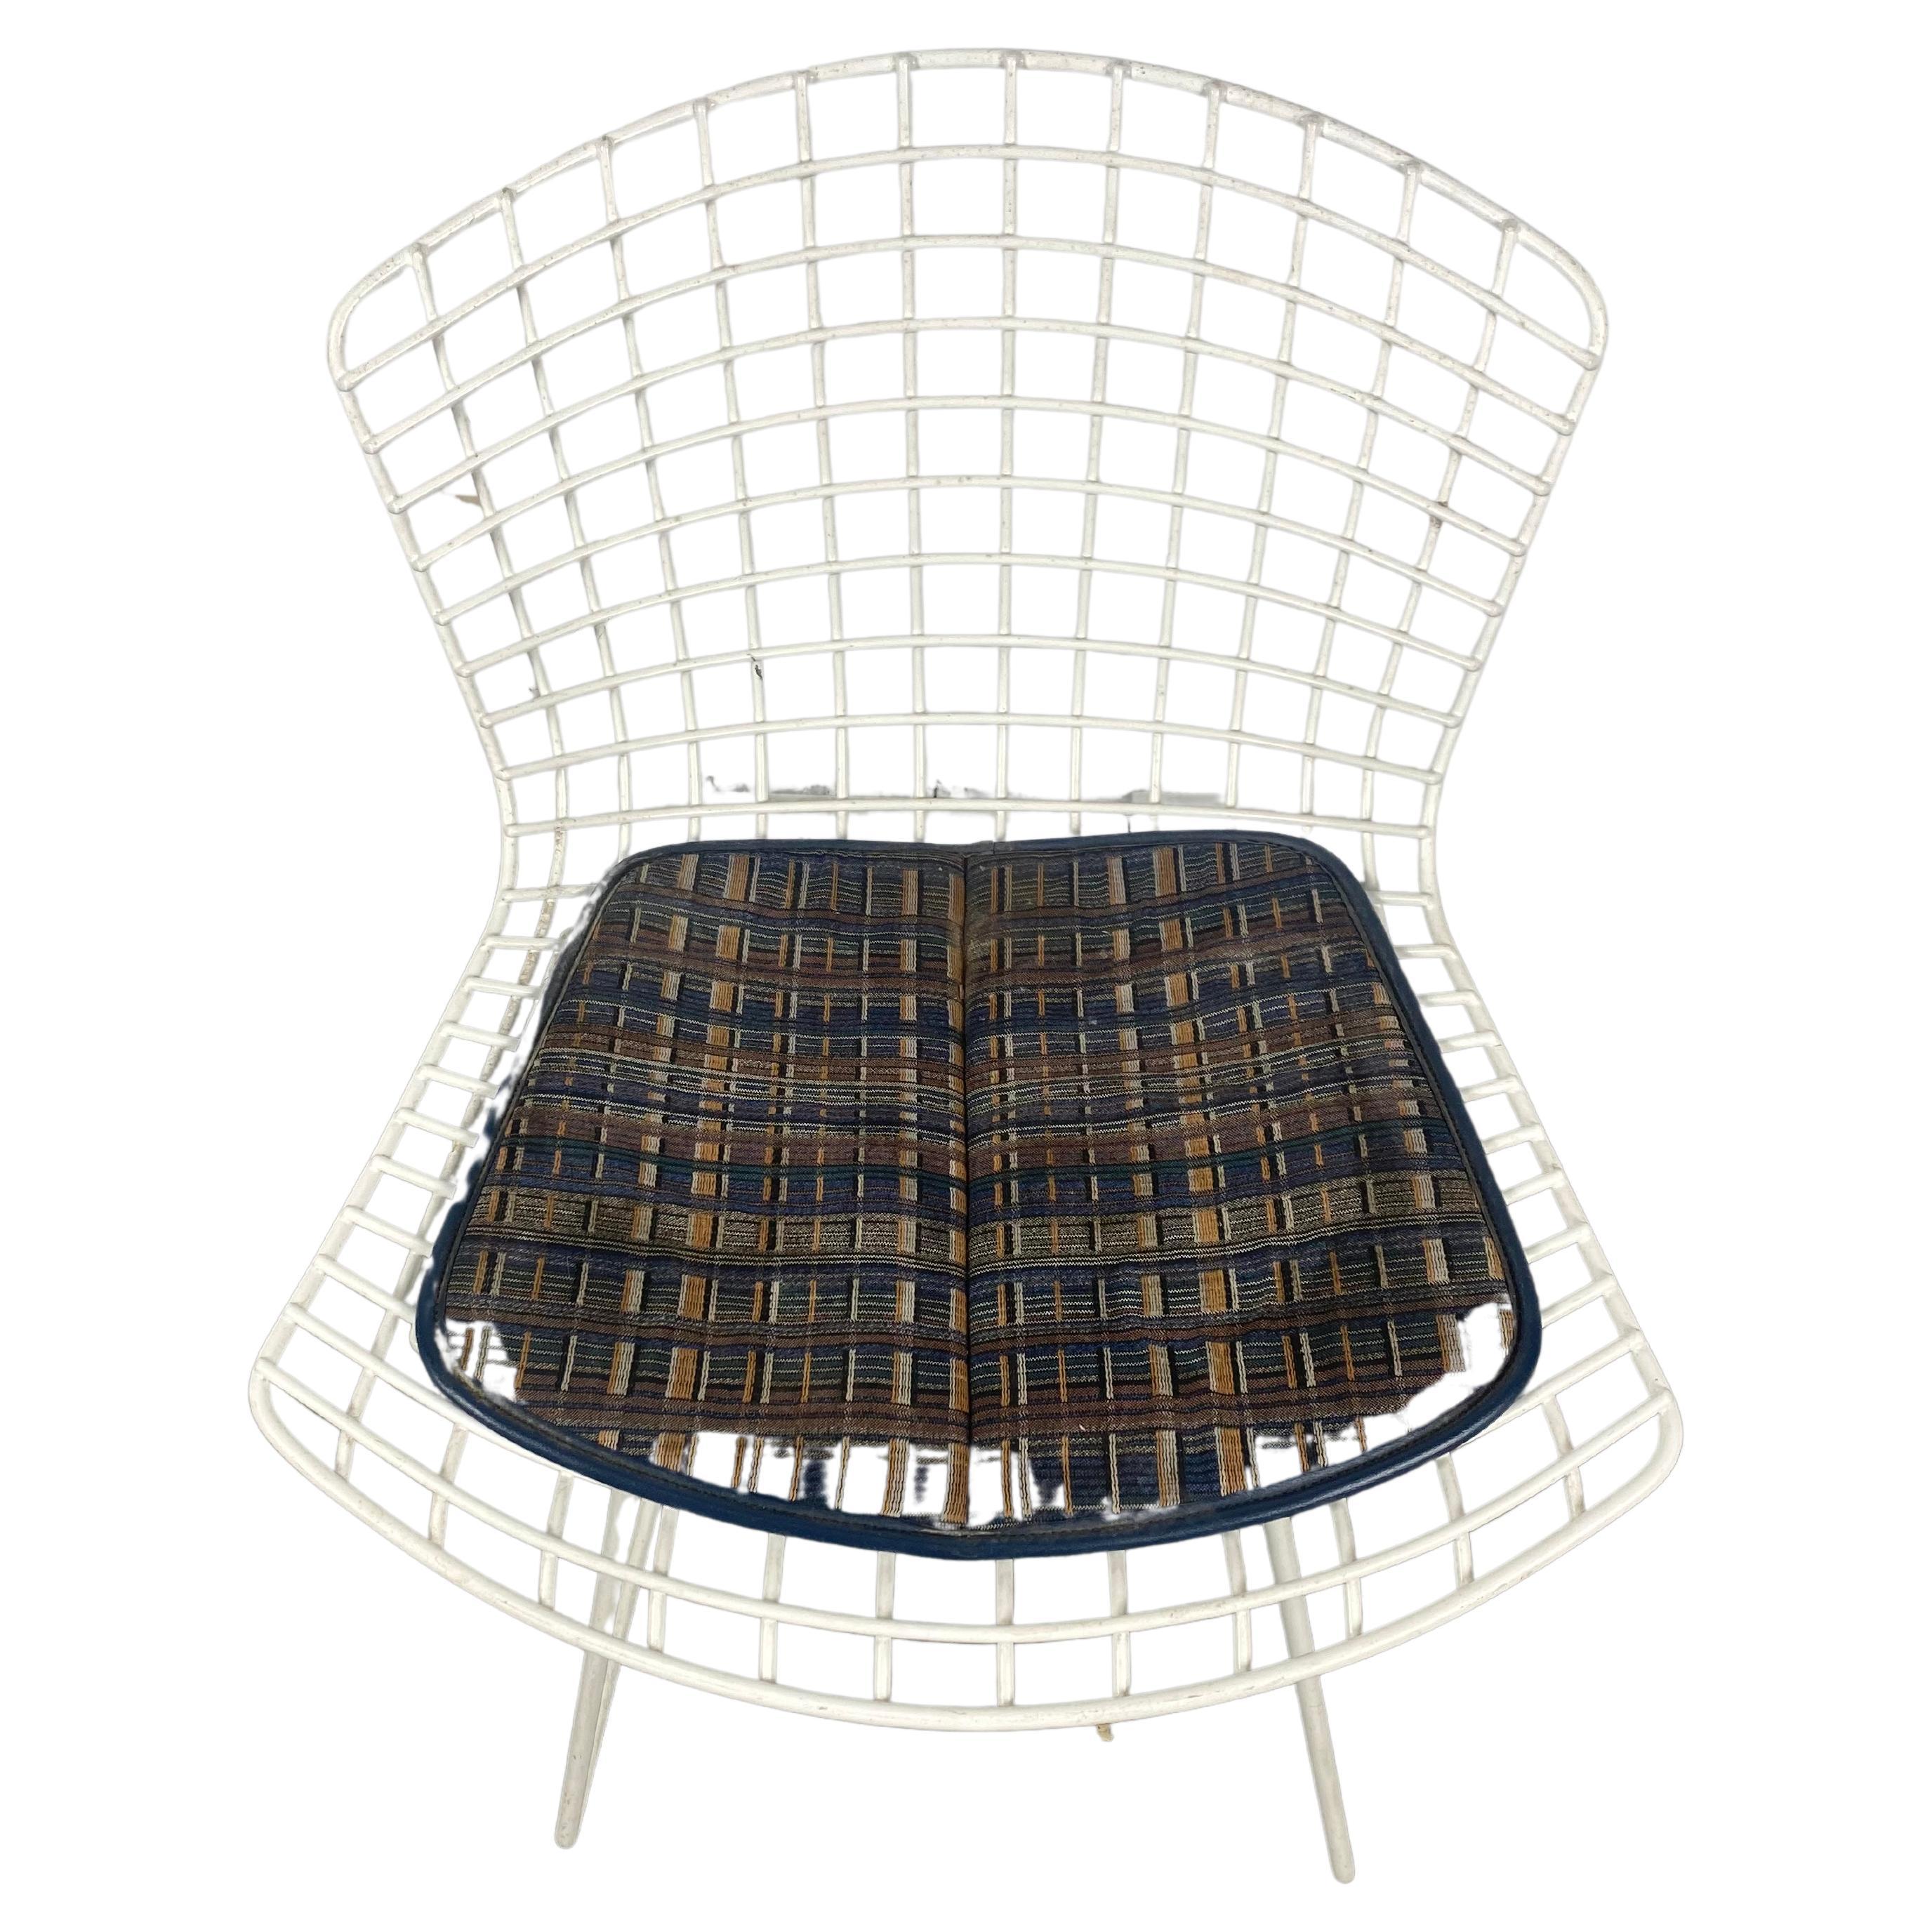 Klassischer Vintage Modern Industrial HARRY BERTOIA Draht Beistellstuhl weiß 1952
Abmessungen: 29.5 x 22,25 T x 18 B
Erstaunlich Originalzustand, benutzerdefinierte Knoll Stoff Sitzkissen.